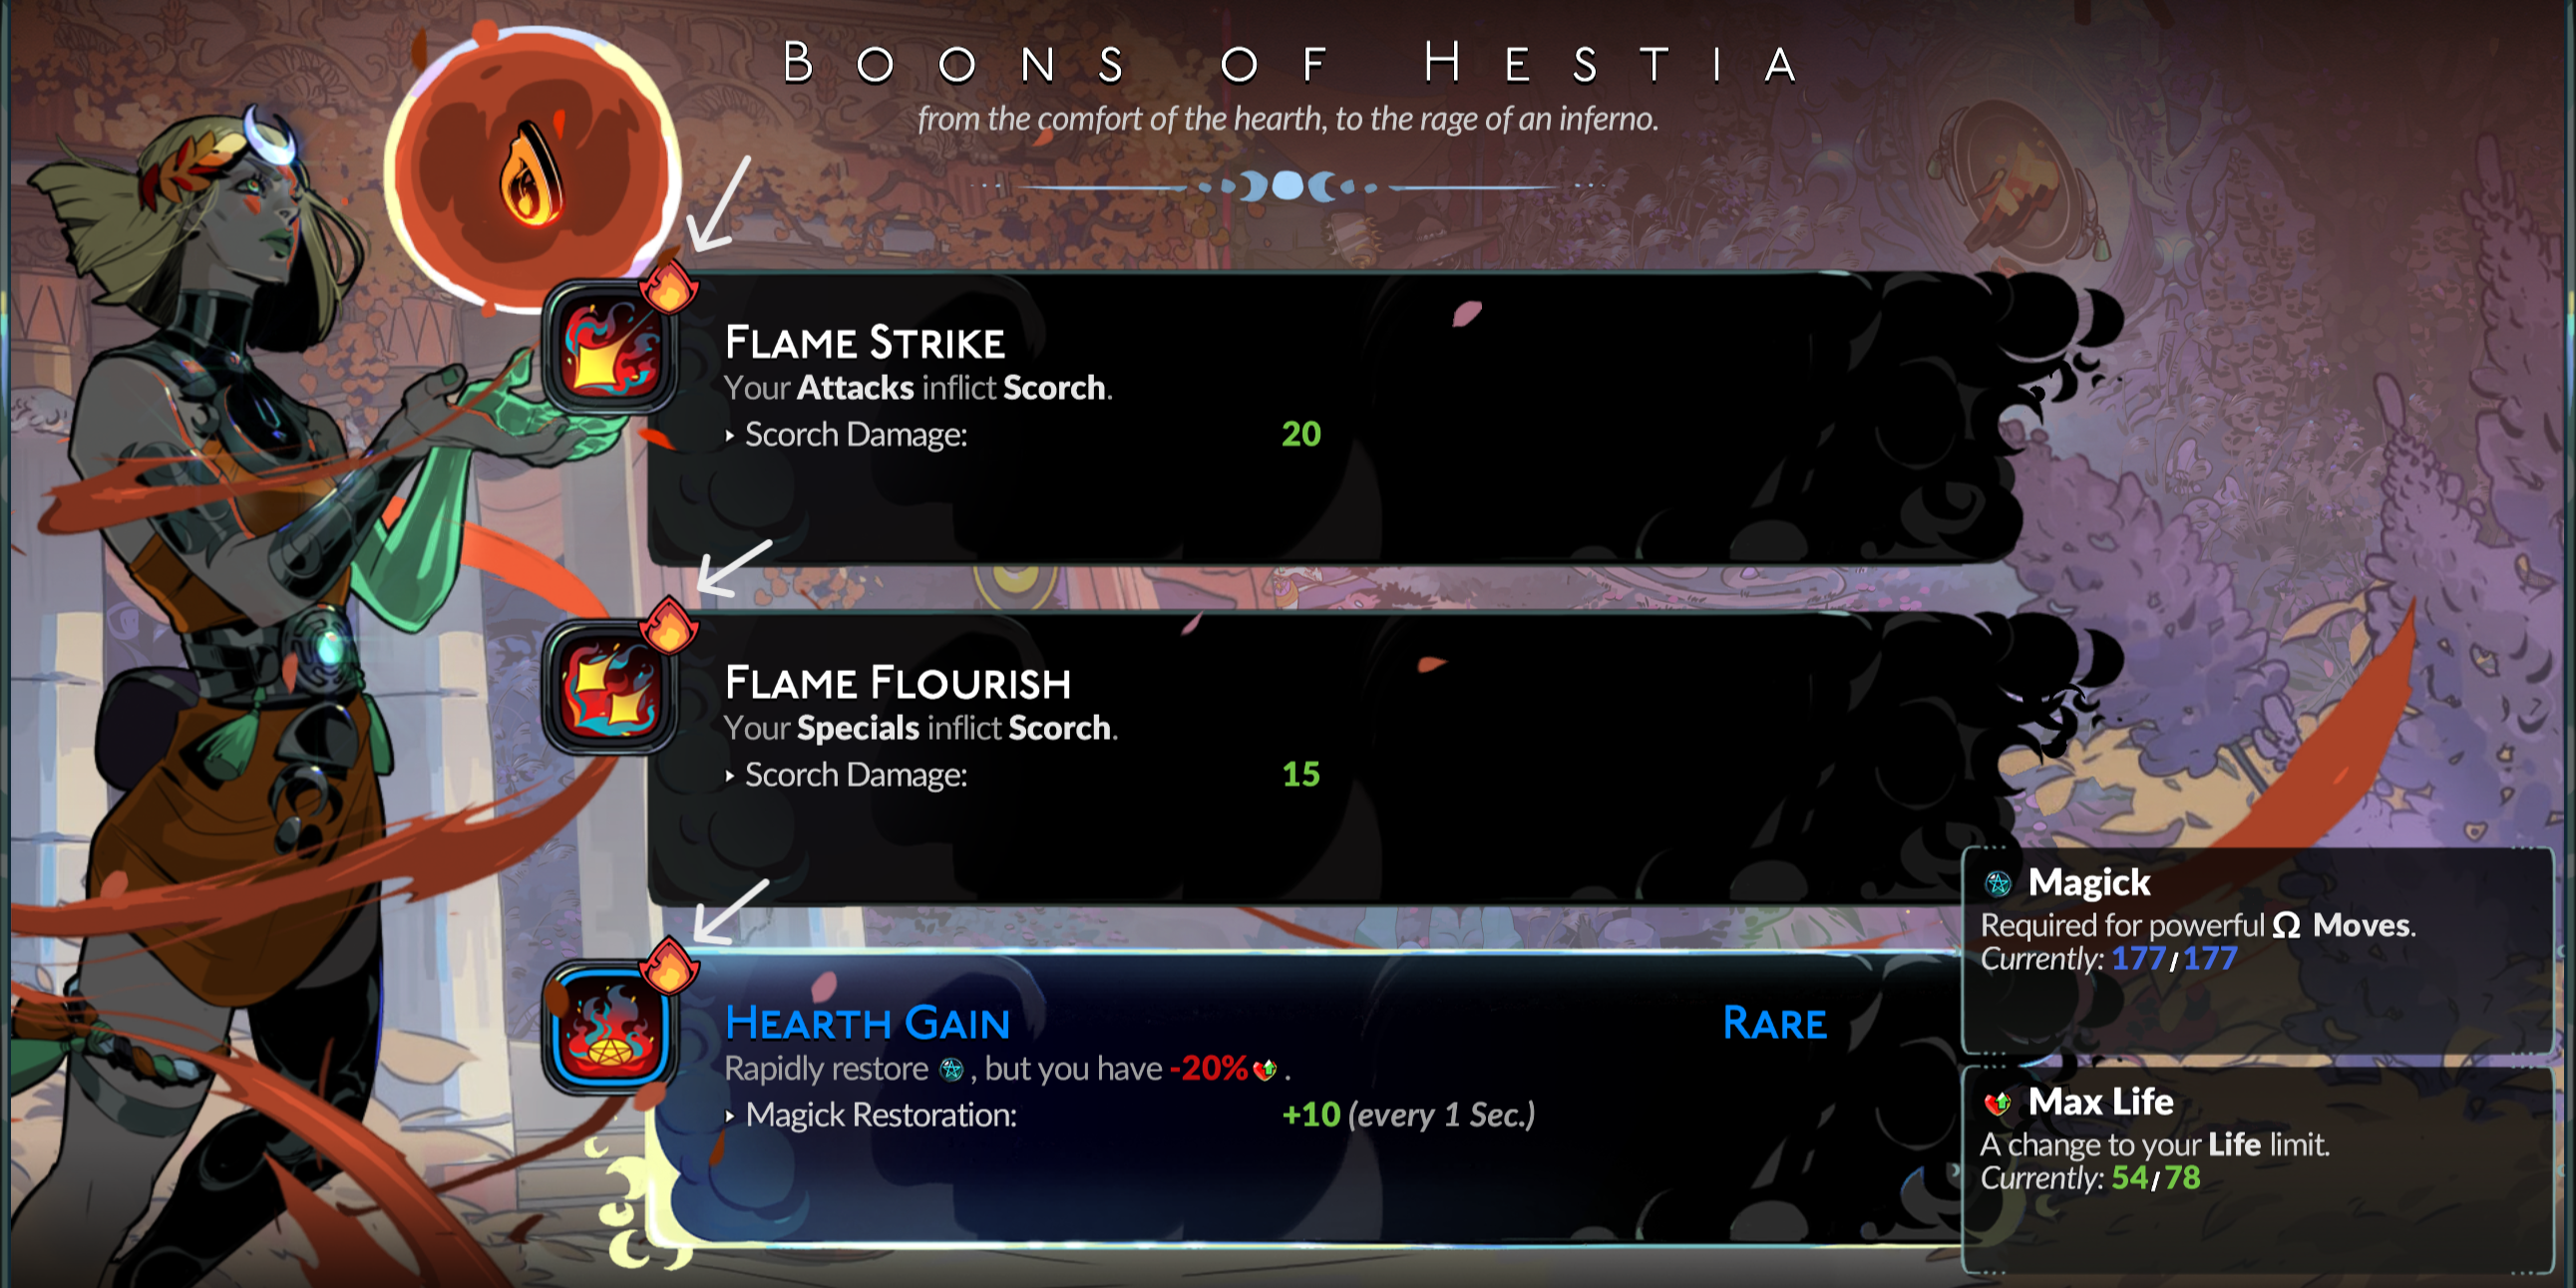 Menu de benefícios de Hestia em Hades 2, com as essências elementares do fogo circuladas para dar ênfase.